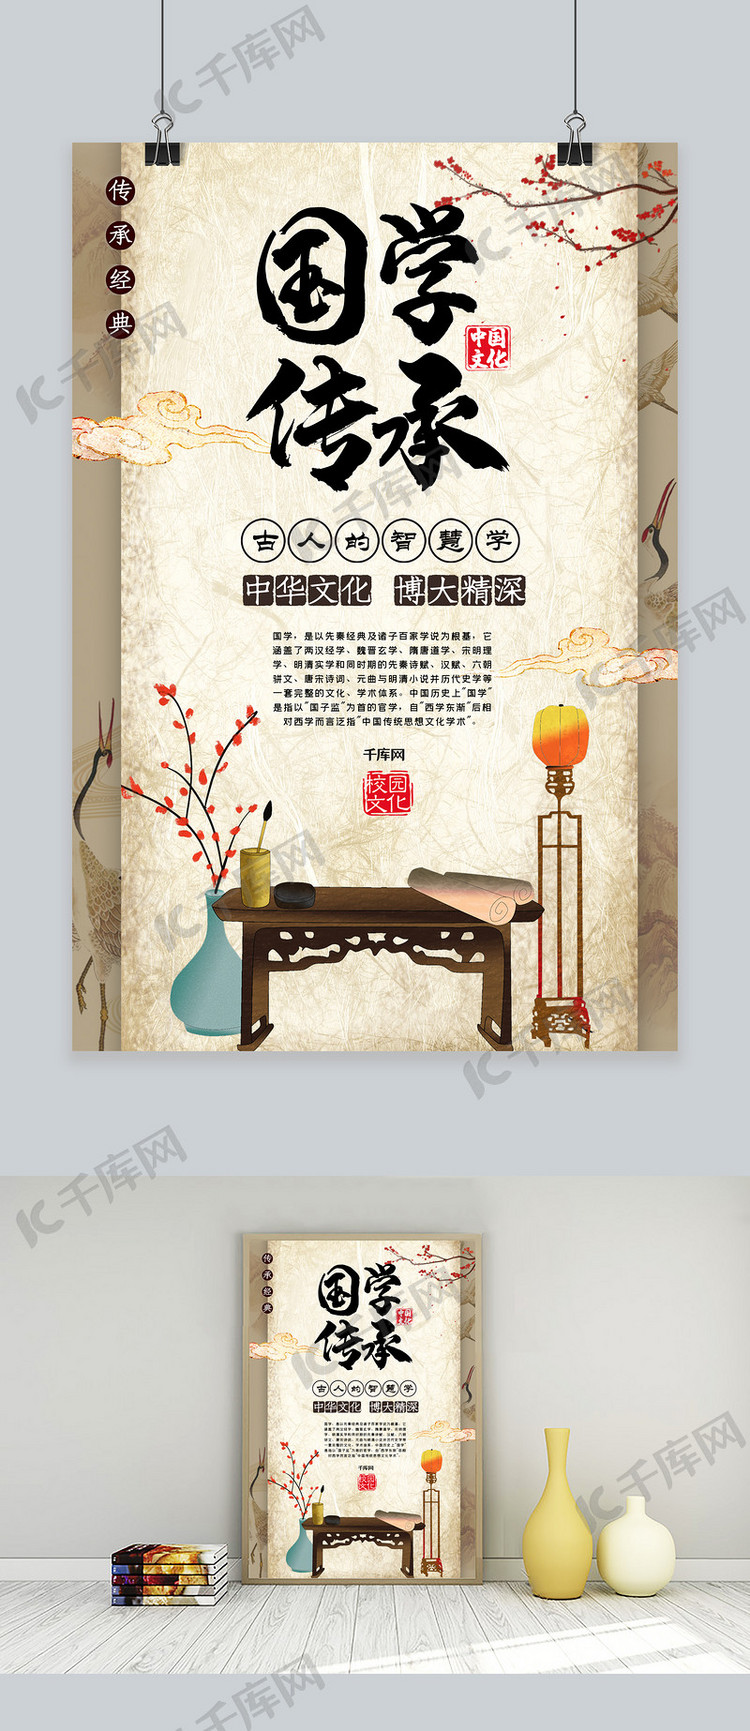 国学中华文化创意合成国学文化传承文化海报